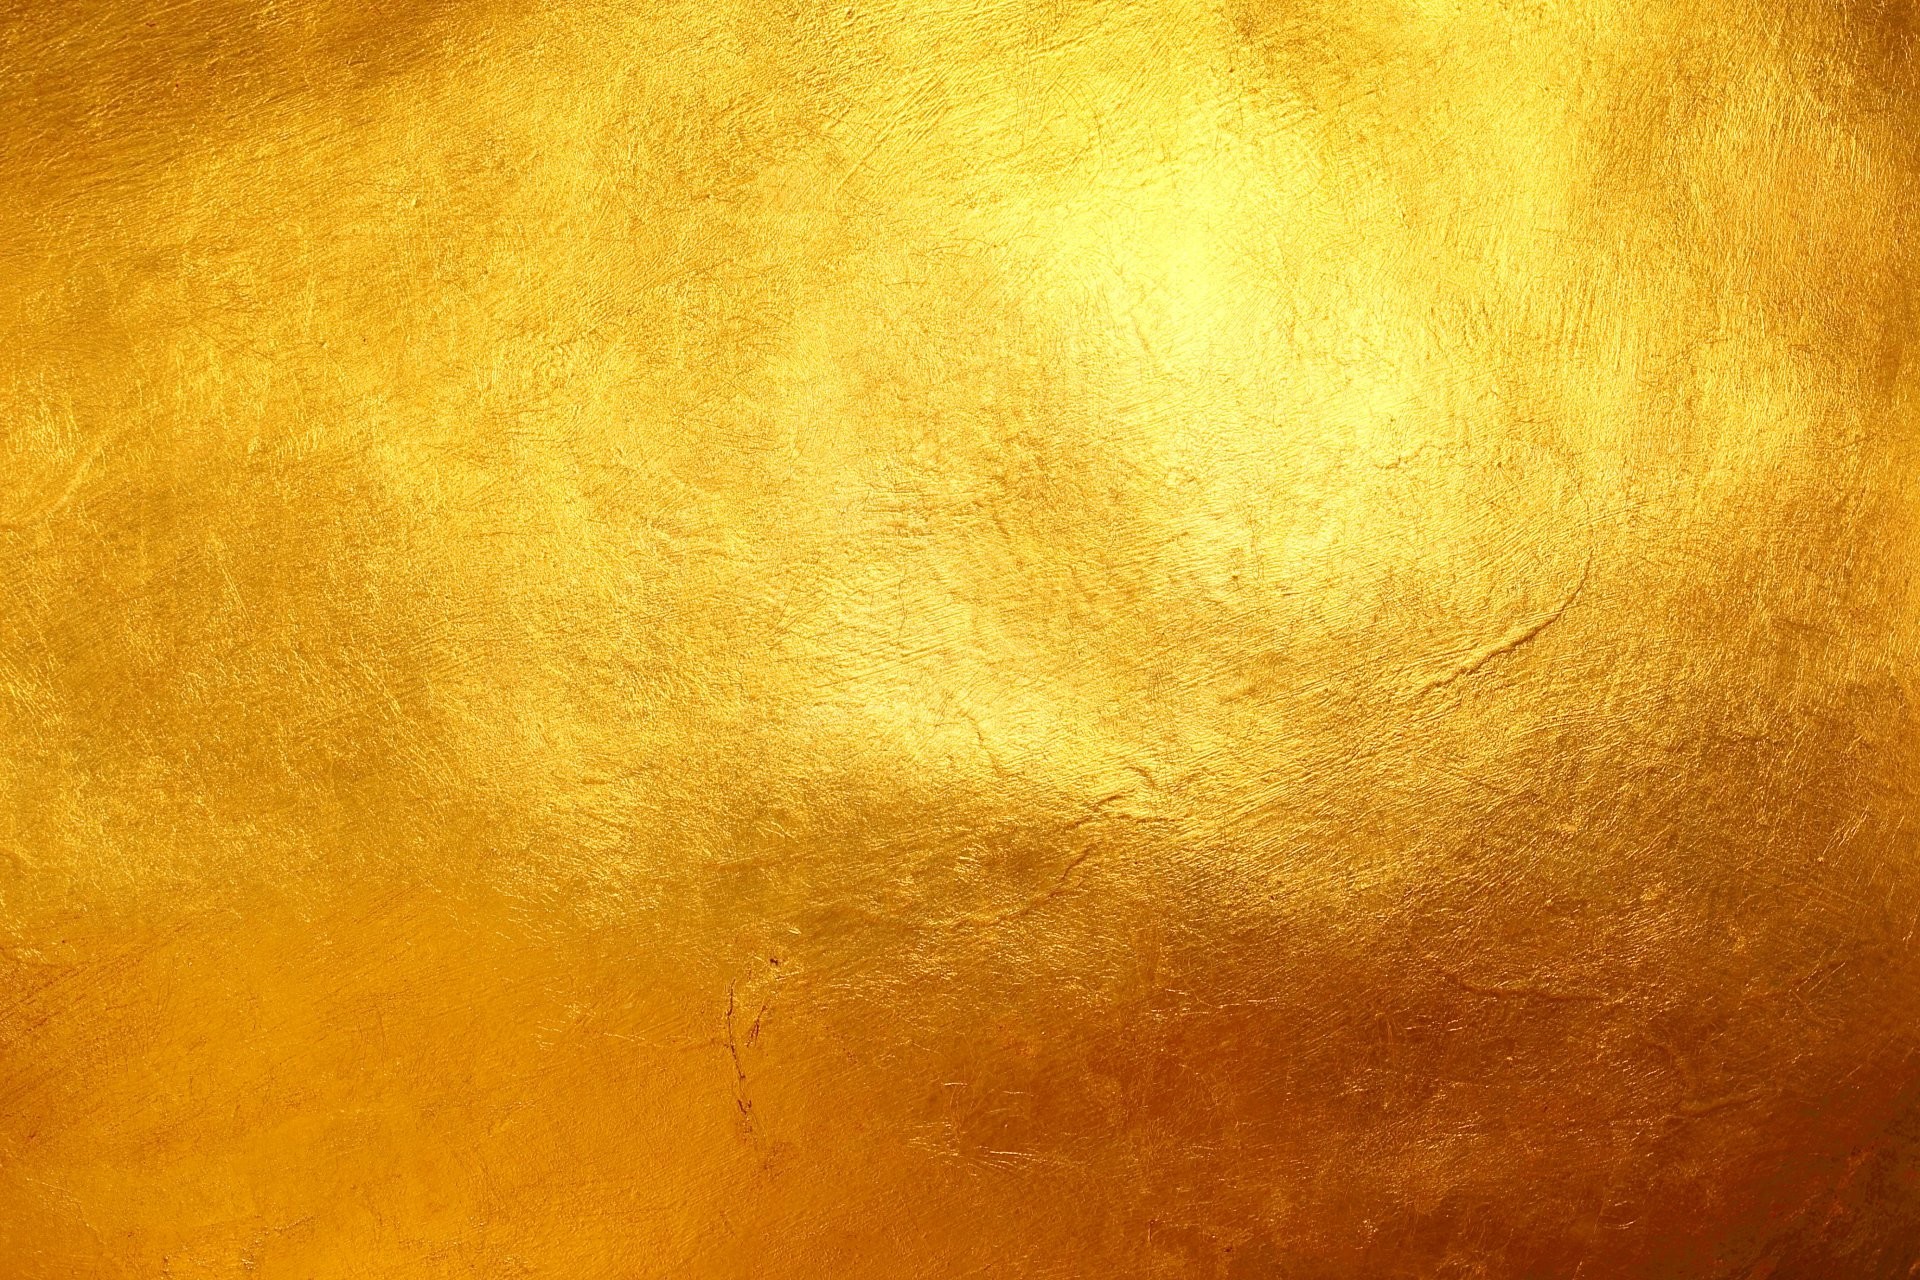 Nền vàng - màu sắc của sự giàu có và thịnh vượng. Cùng nhìn vào những tác phẩm nghệ thuật mang trong mình mảng màu này và cảm nhận sự khác biệt và độc đáo của nền vàng trong hình ảnh.